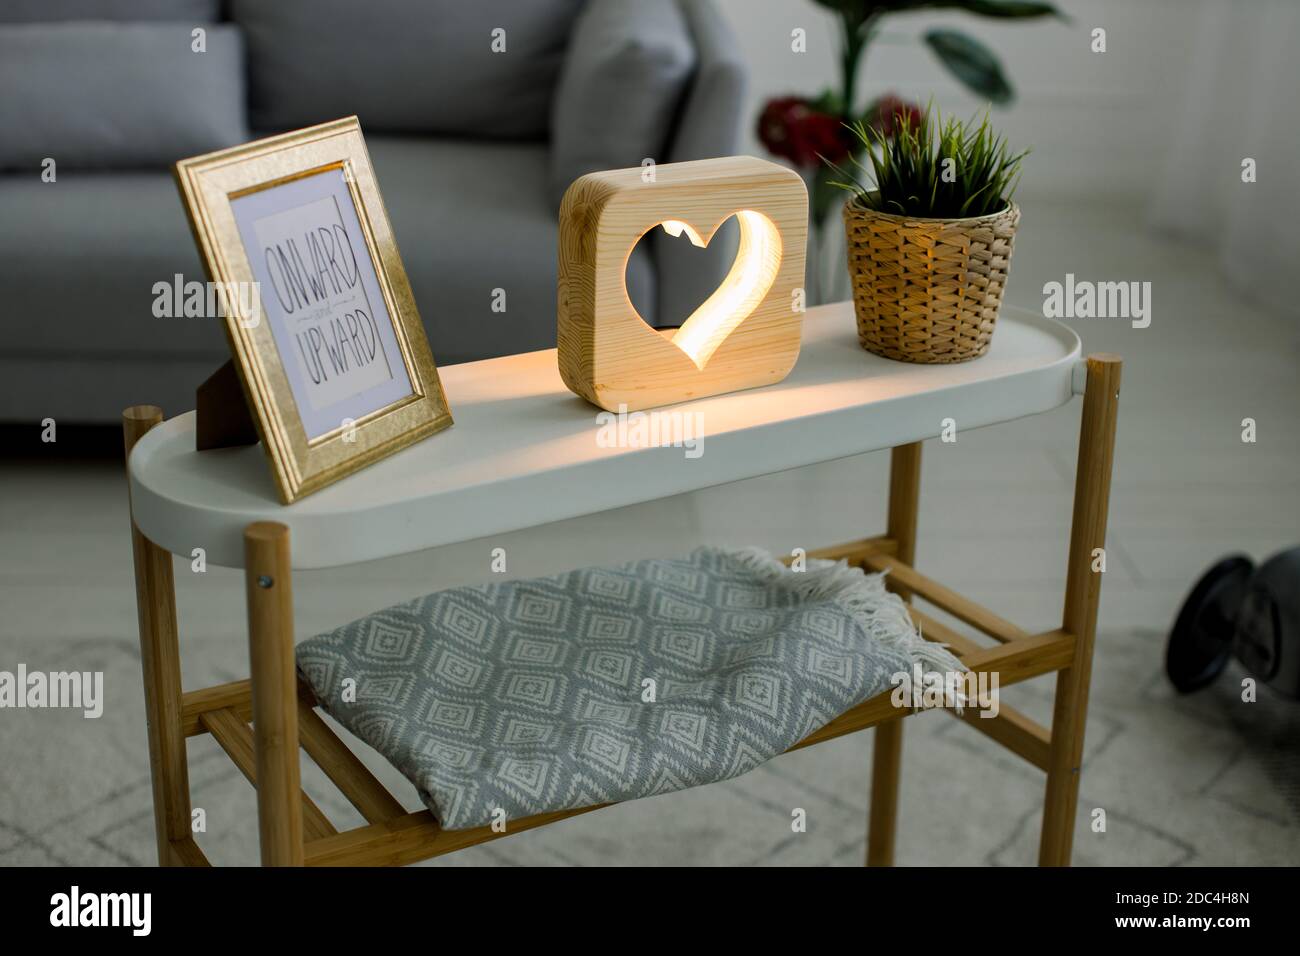 Vue en angle sur le décor fait à la main, table basse avec cadre photo, lampe décorative en bois avec photo de coeur, et plante verte dans pot de fleur en osier Banque D'Images